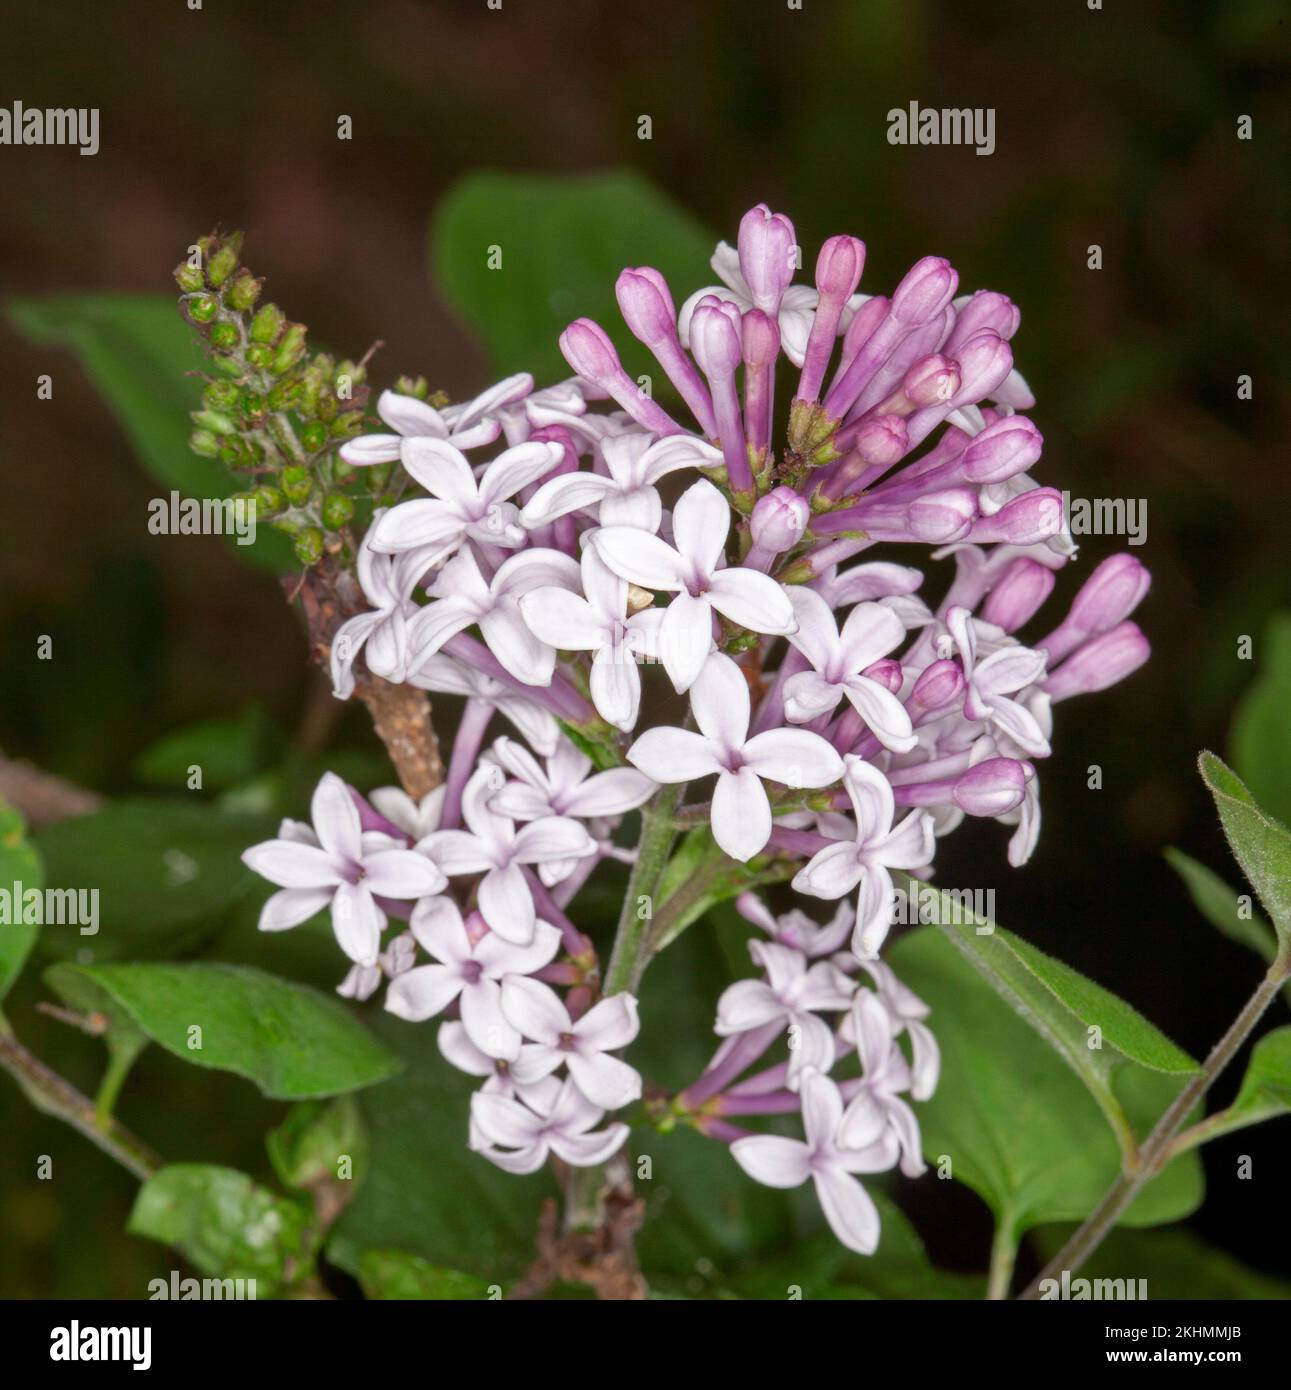 Grappolo di fiori profumati di colore rosa pallido/bianco di lilla nana, Syringa meyeri x microfylla 'nana Josee', arbusto deciduo sul dorso di foglie verdi, Foto Stock